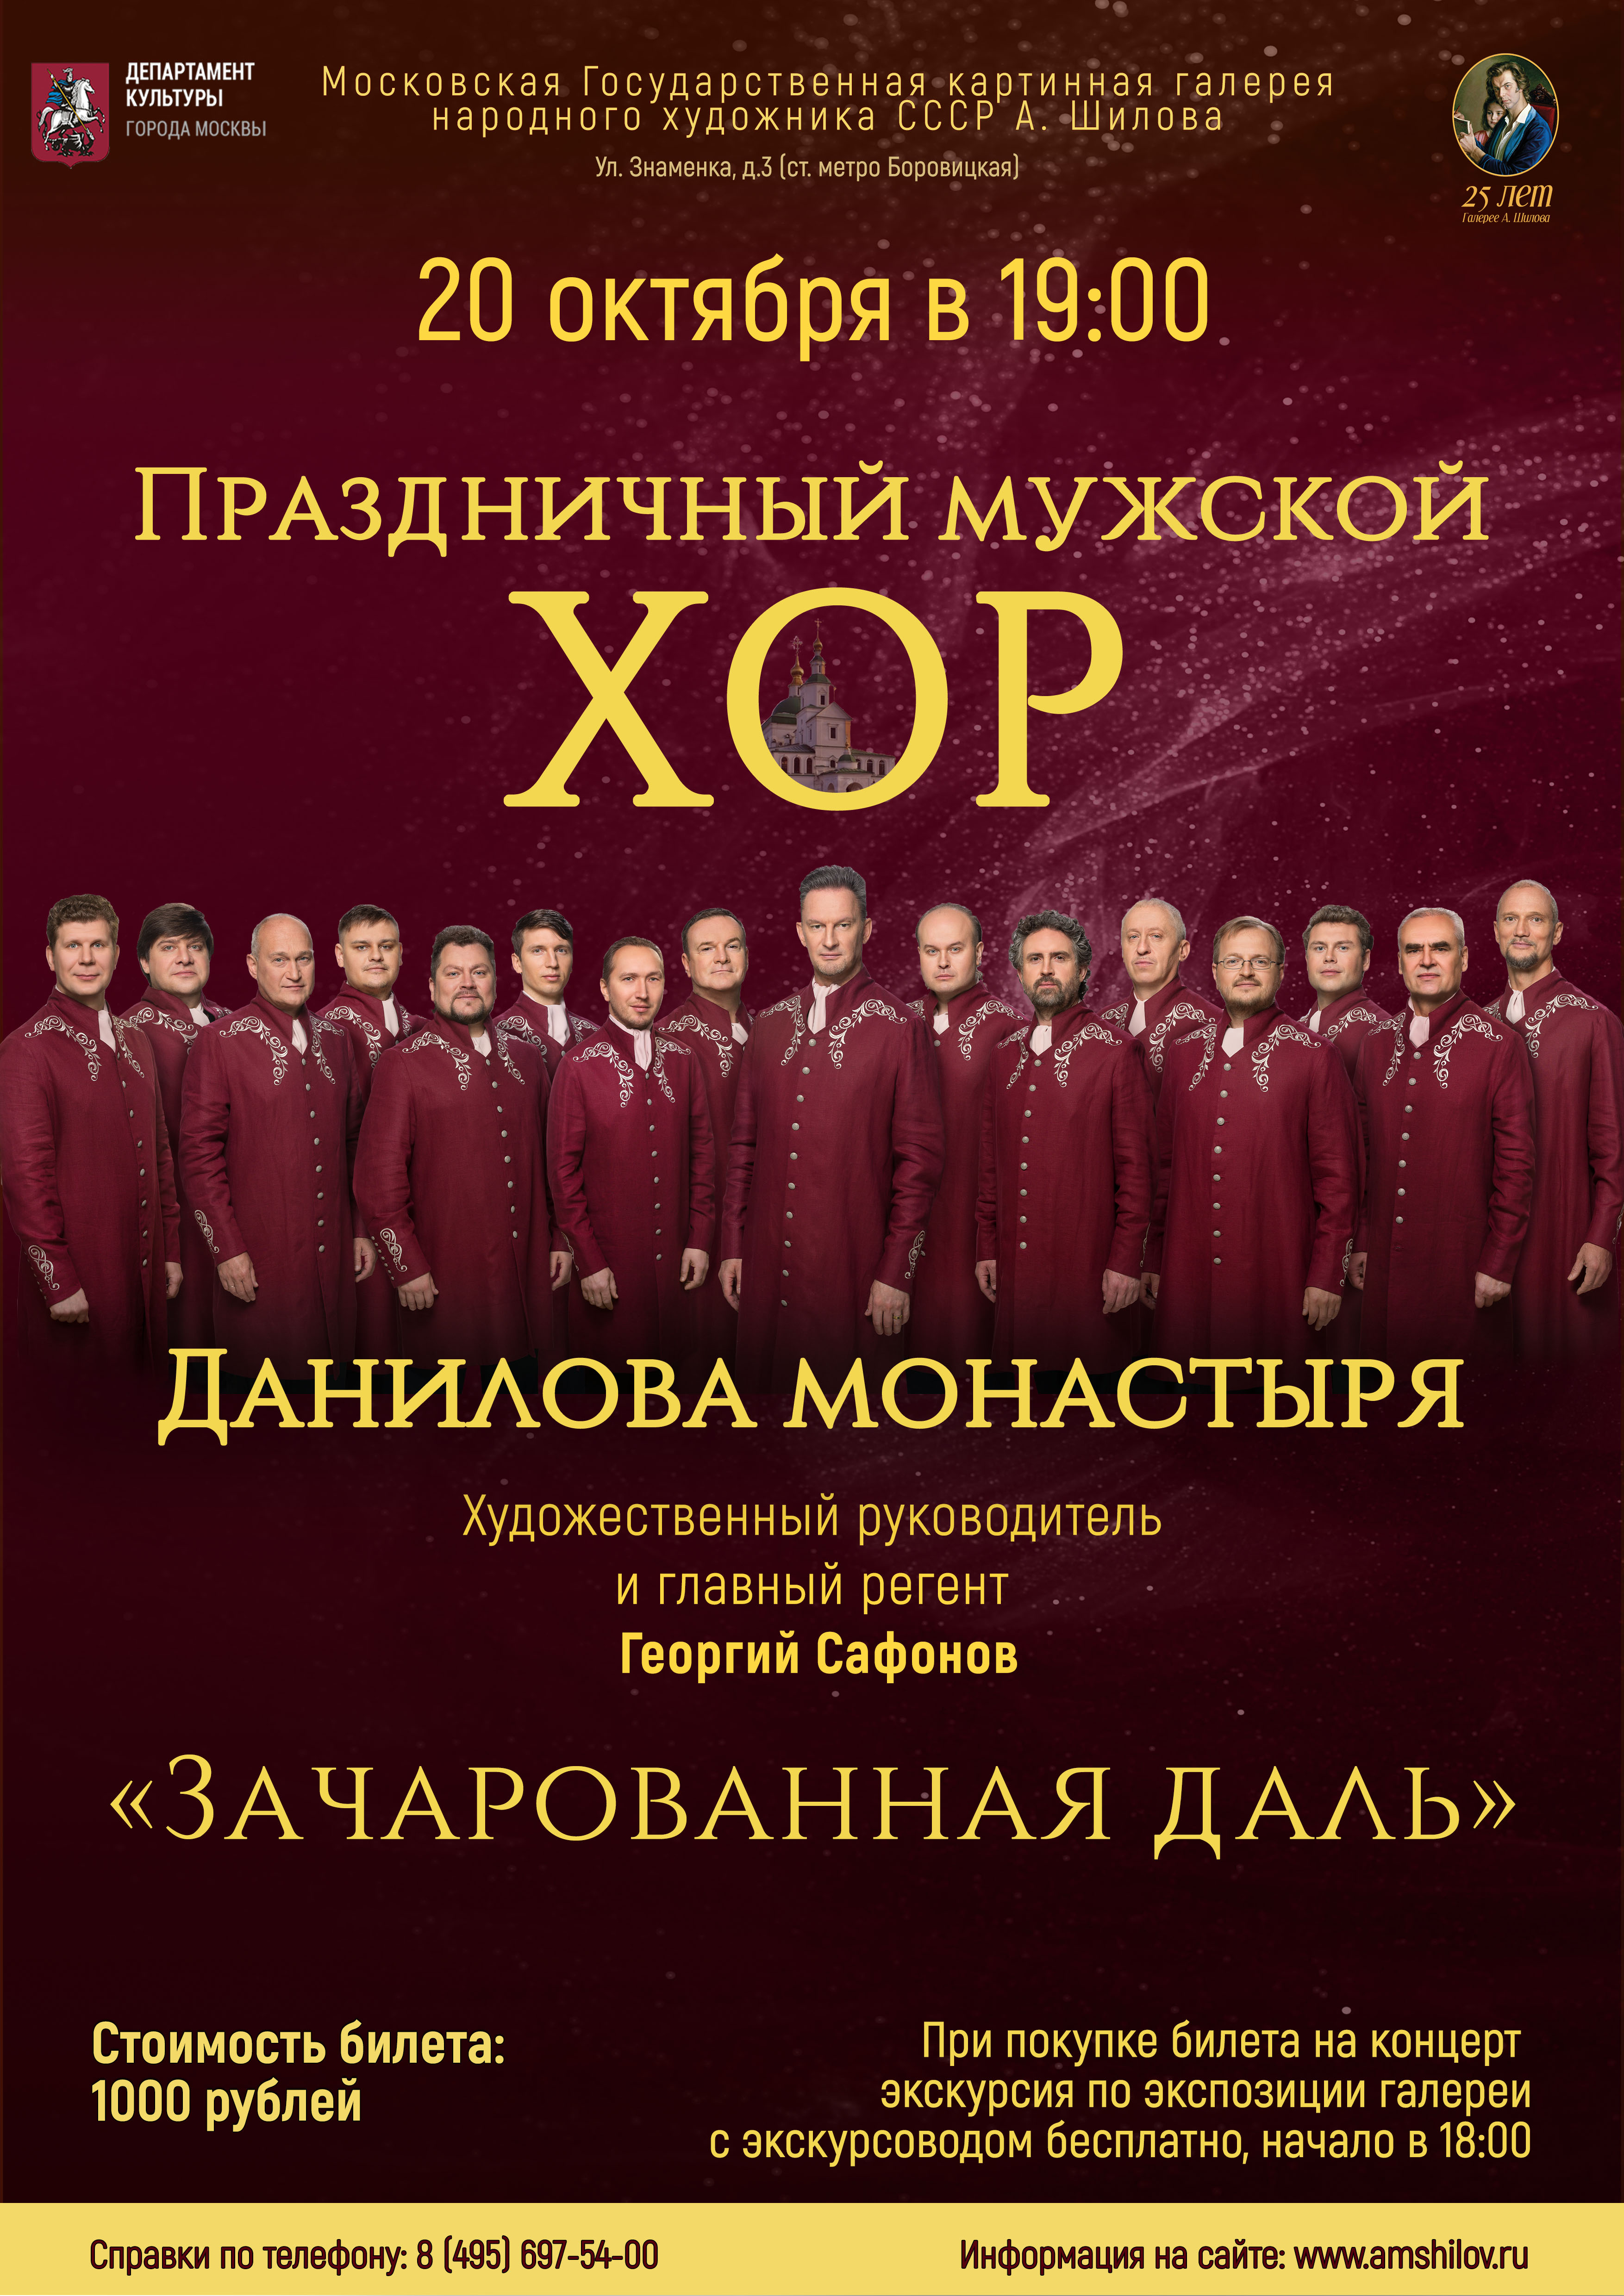 Праздничный мужской хор Данилова монастыря «Зачарованная даль»